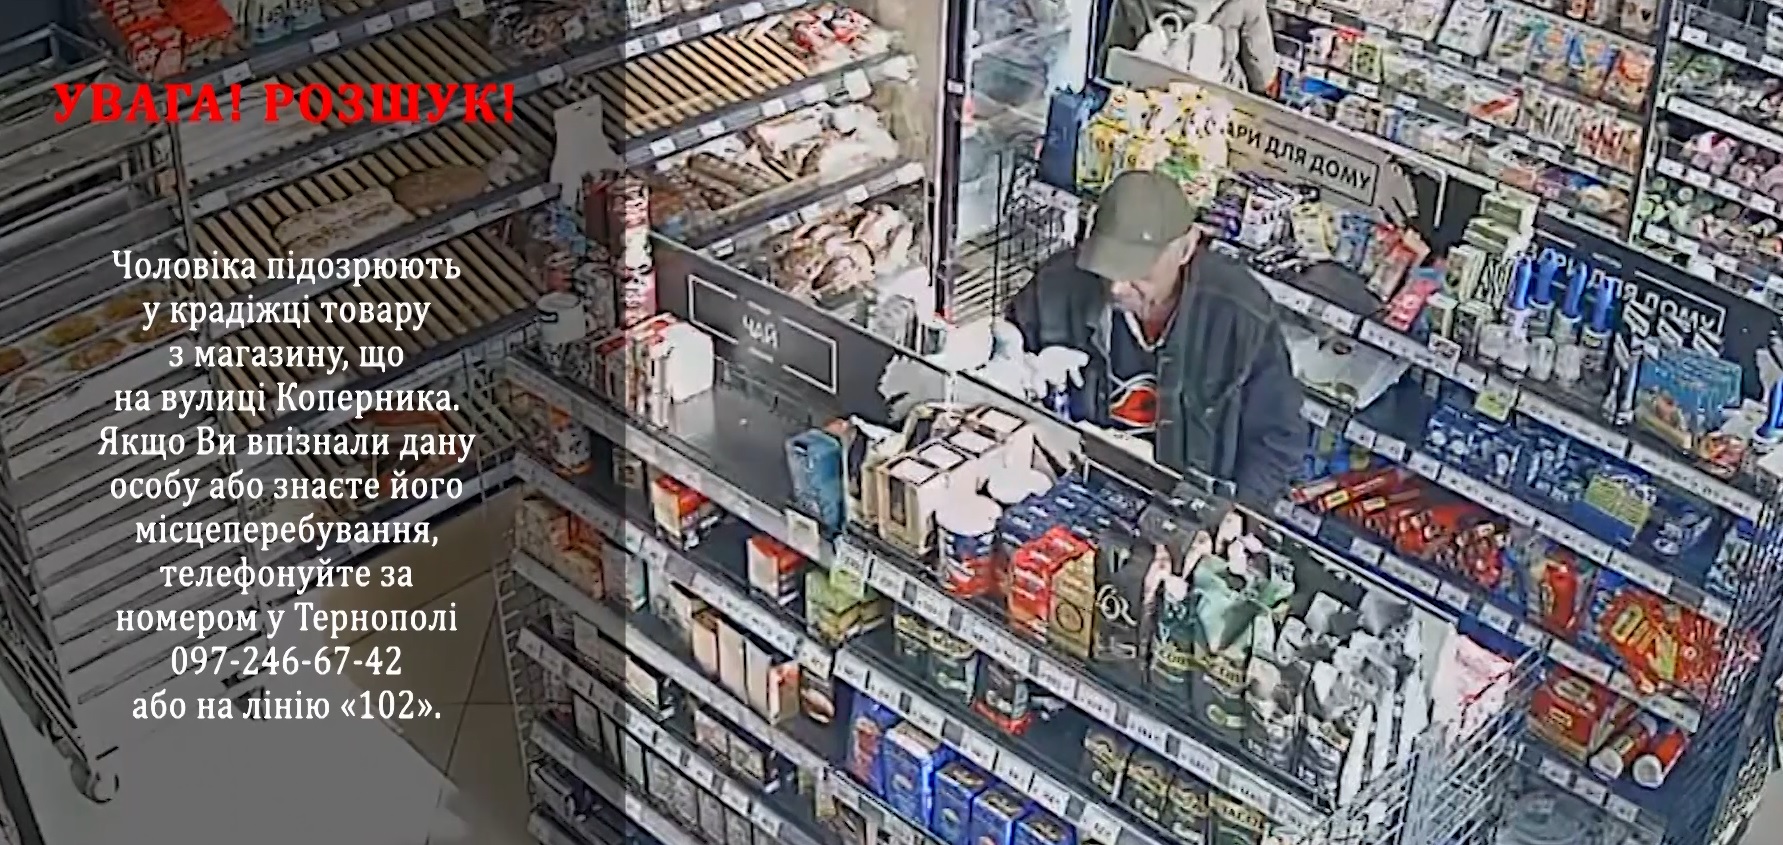 Чоловіка, який пограбував магазин, розшукують у Тернополі